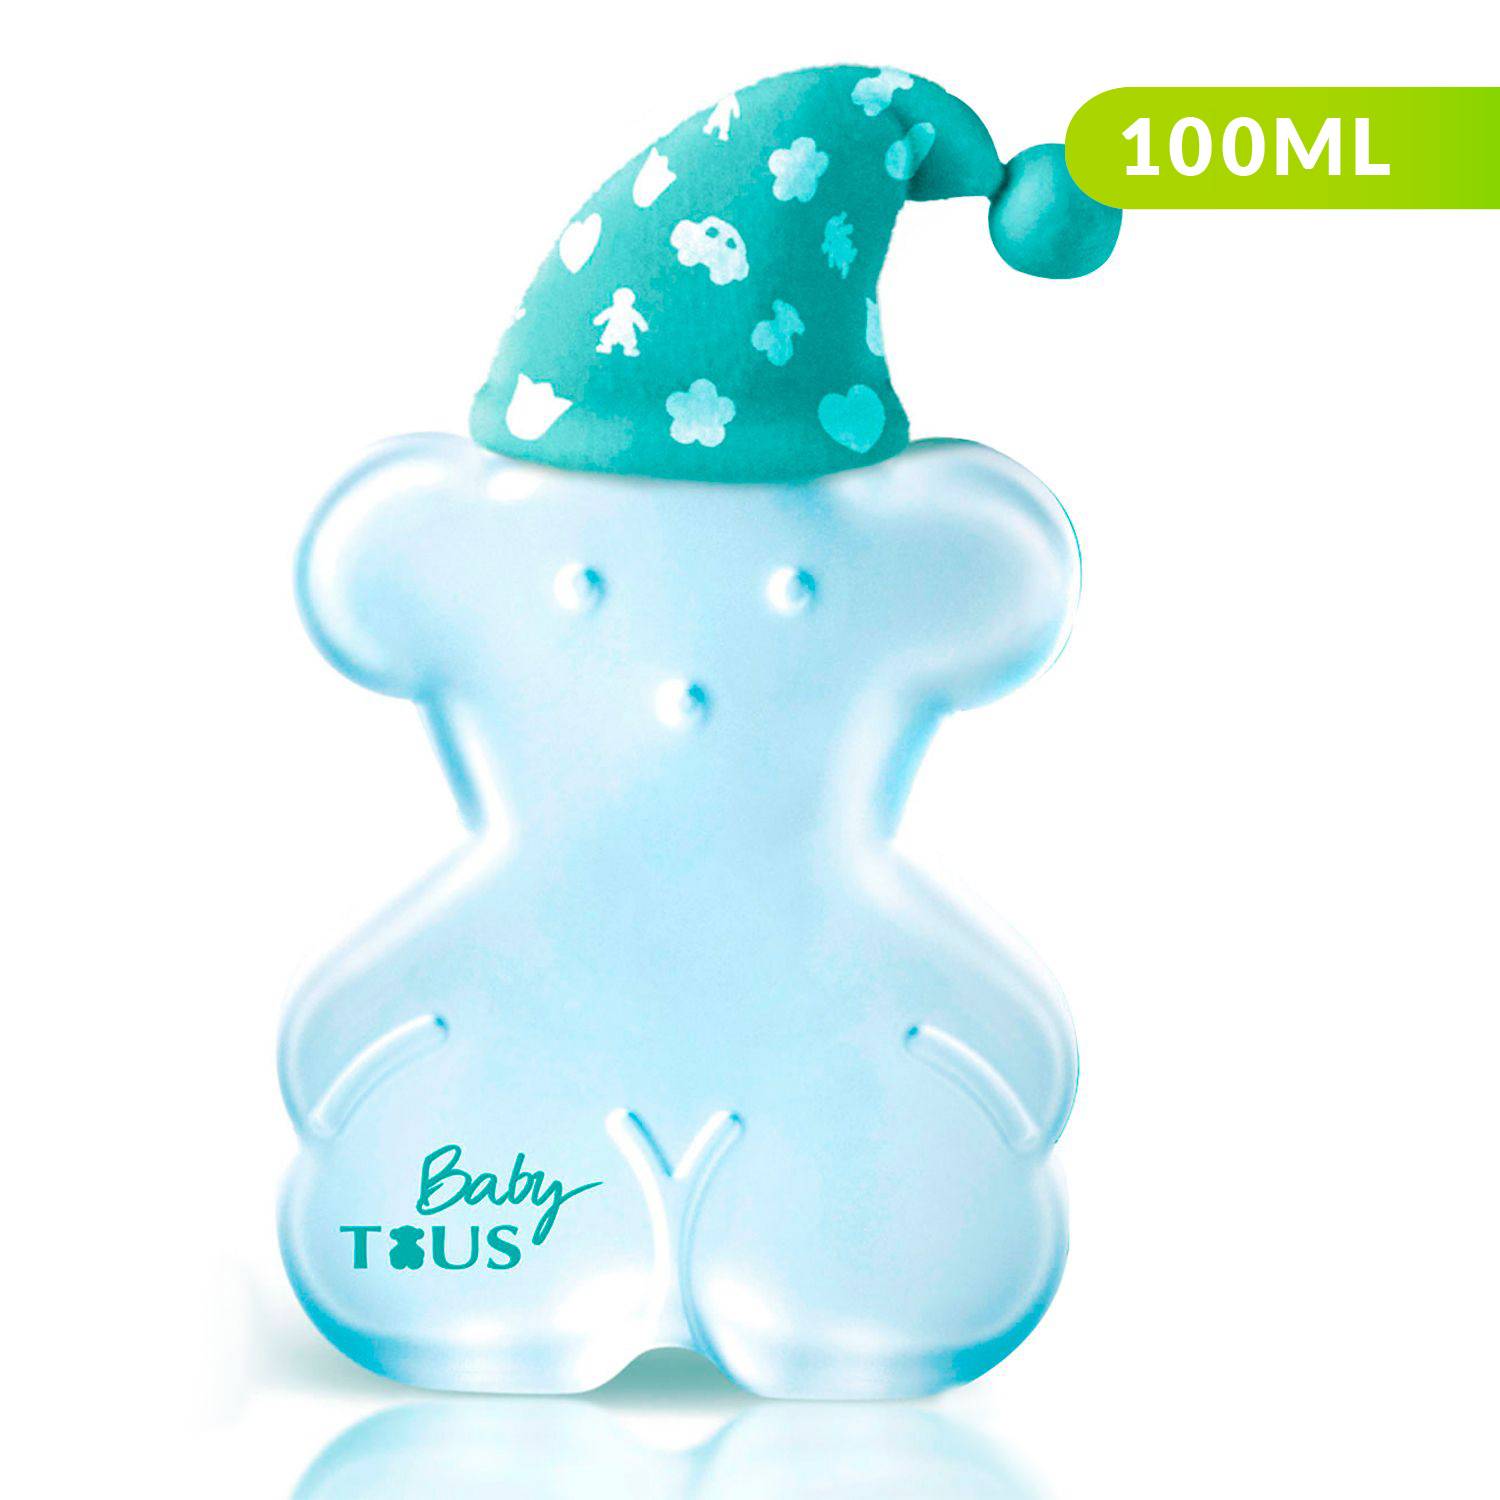 Perfume Baby EDC 100 ml TOUS